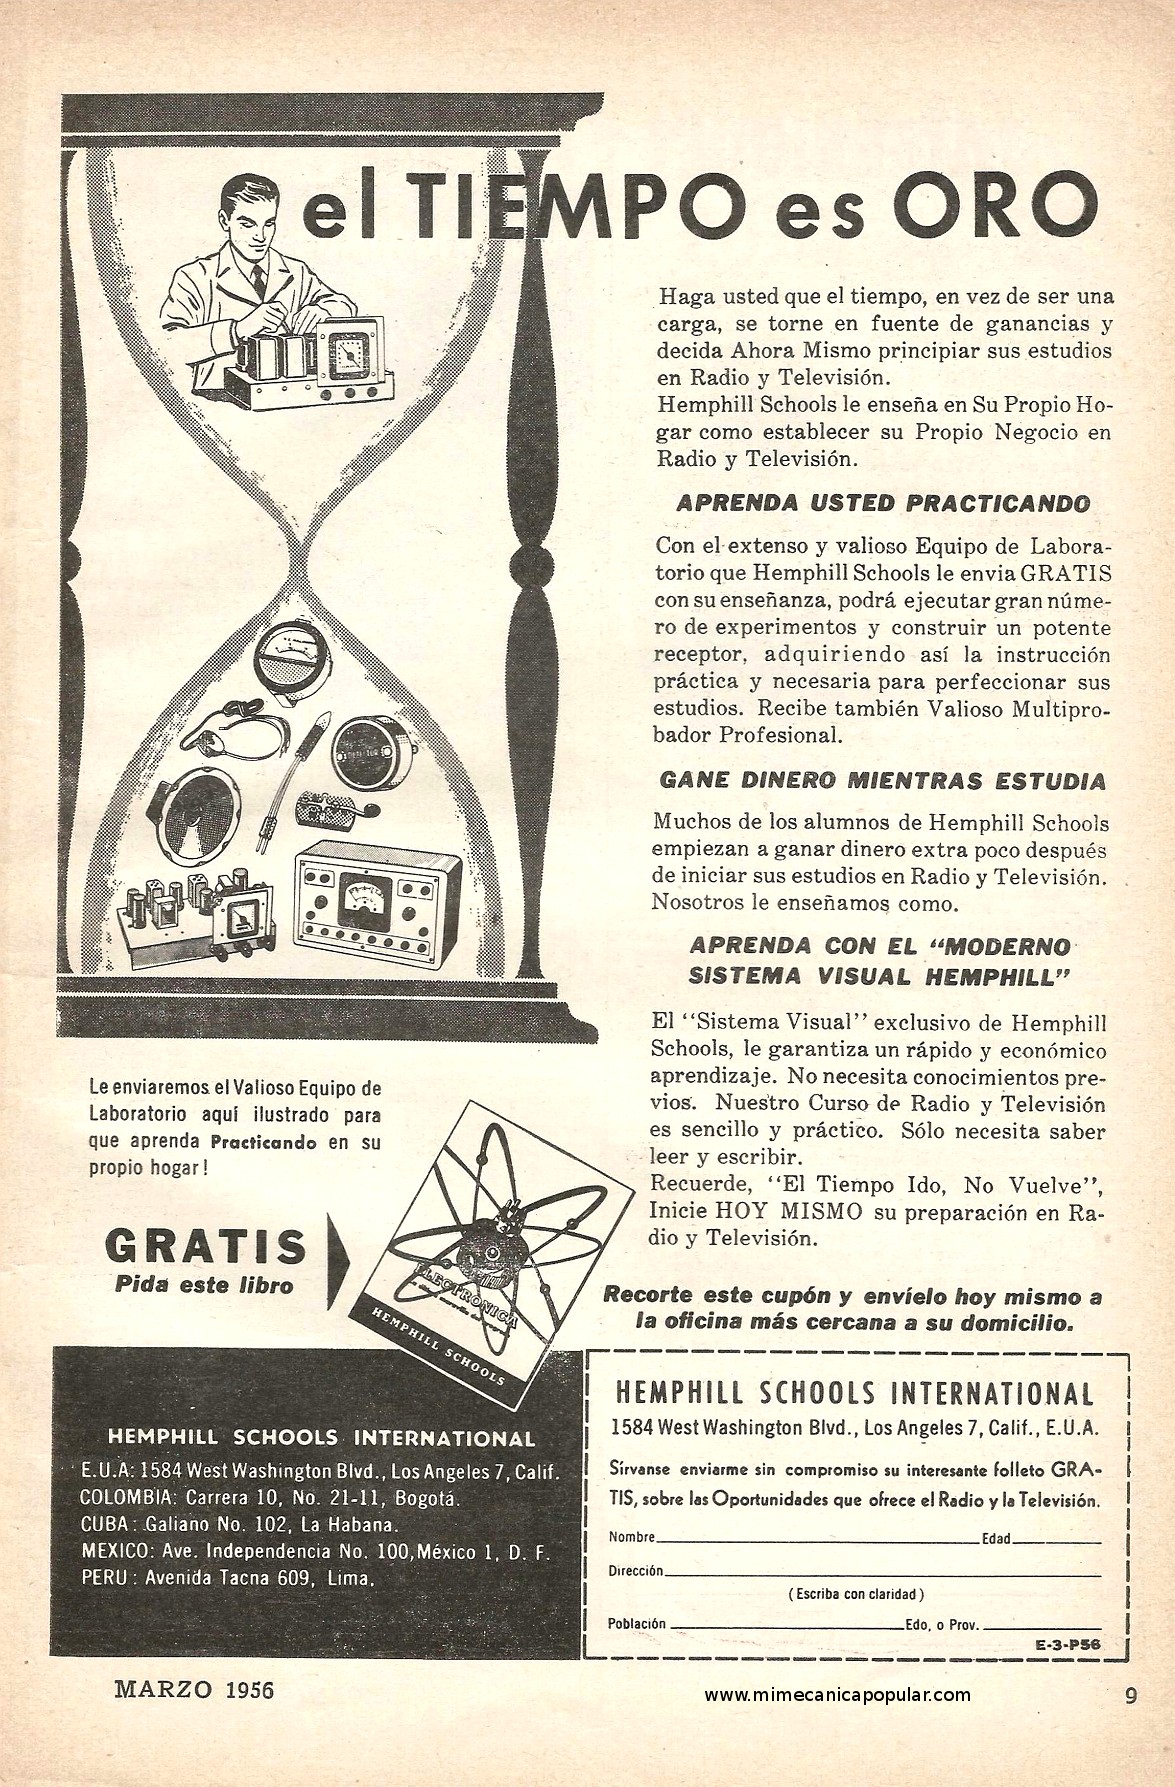 Publicidad - Hemphill Schools International - Marzo 1956